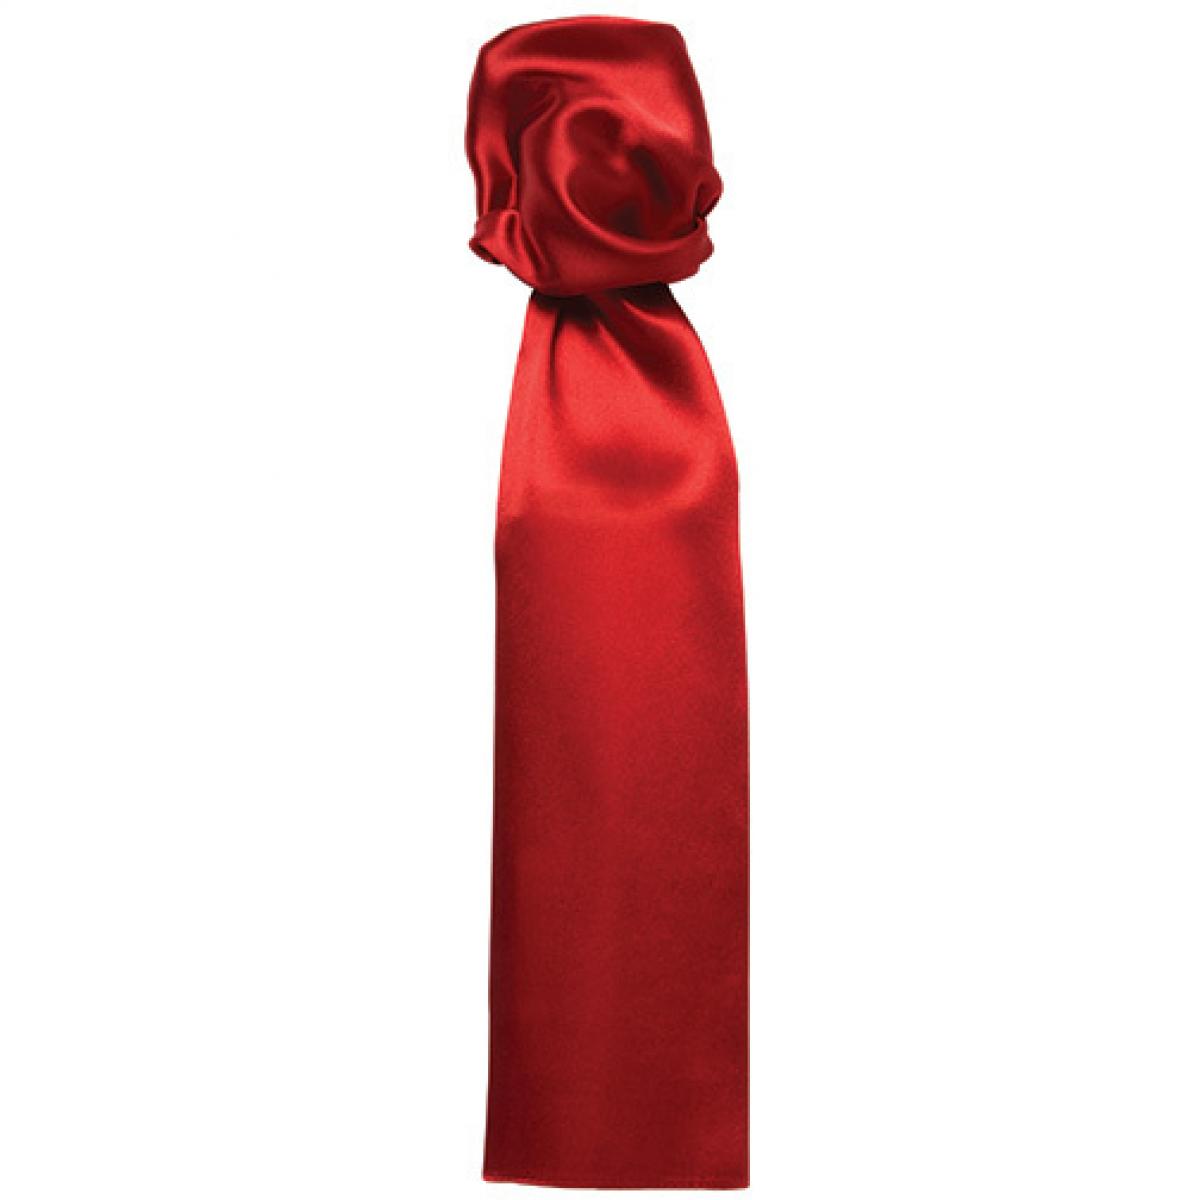 Hersteller: Premier Workwear Herstellernummer: PR730 Artikelbezeichnung: Damenhalstuch uni - 140 x 25 cm Farbe: Red (ca. Pantone 200C)